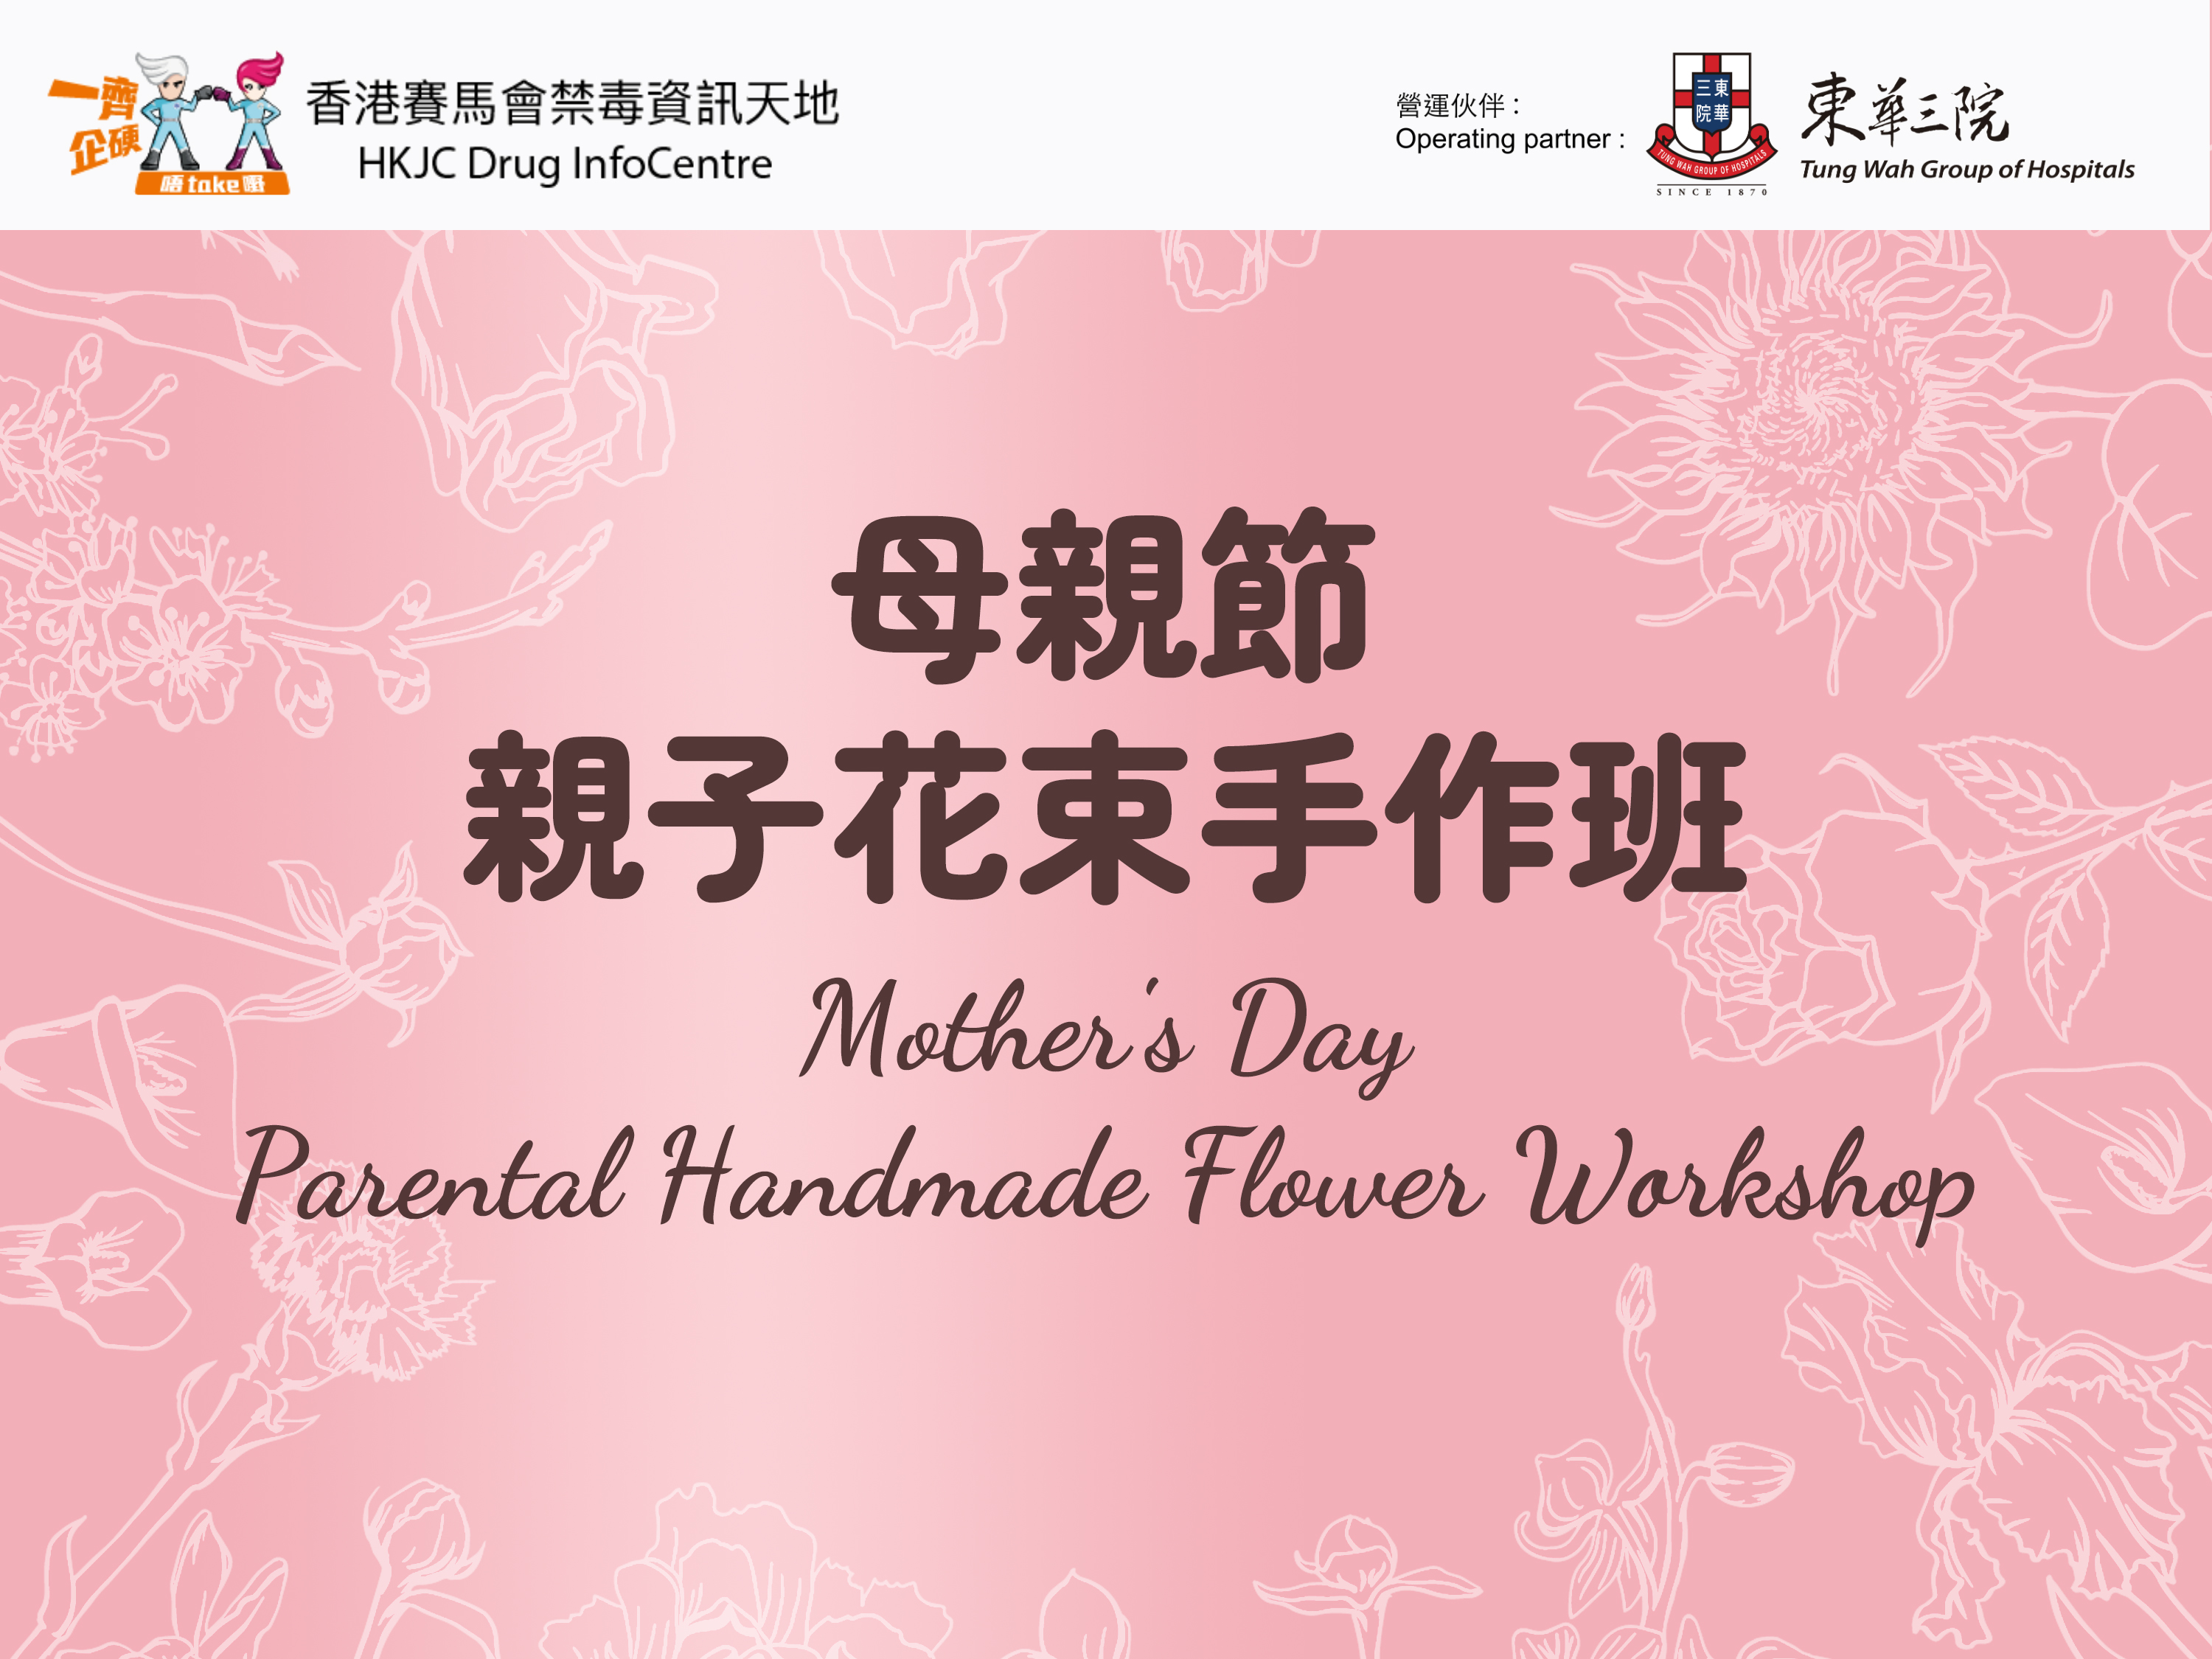 Mother's Day - Parental Handmade Flower Workshop 